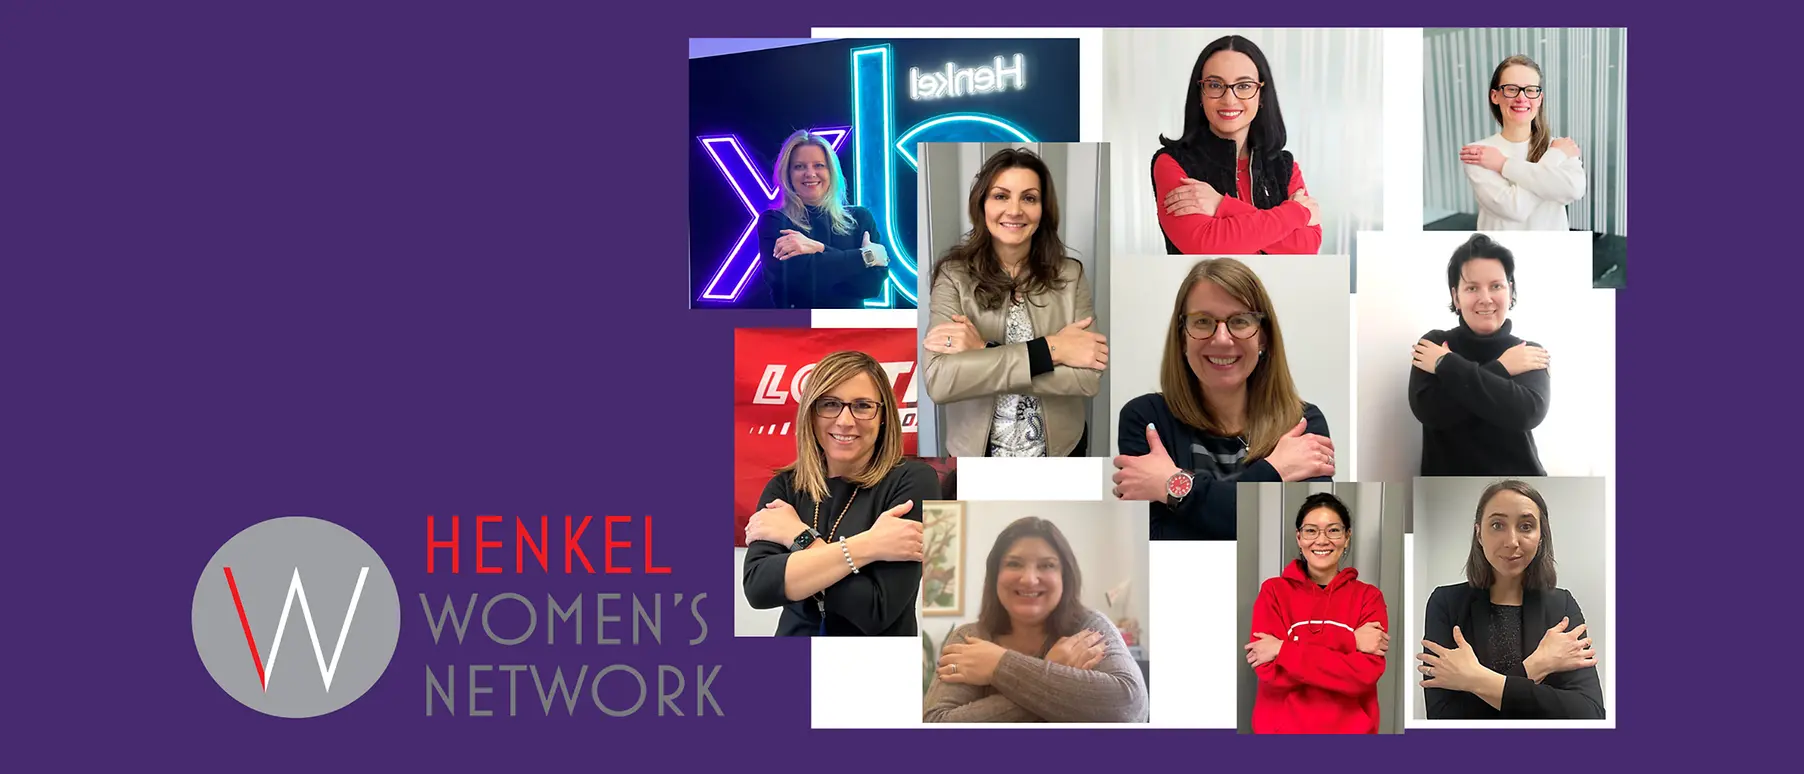 Henkel Women’s Network